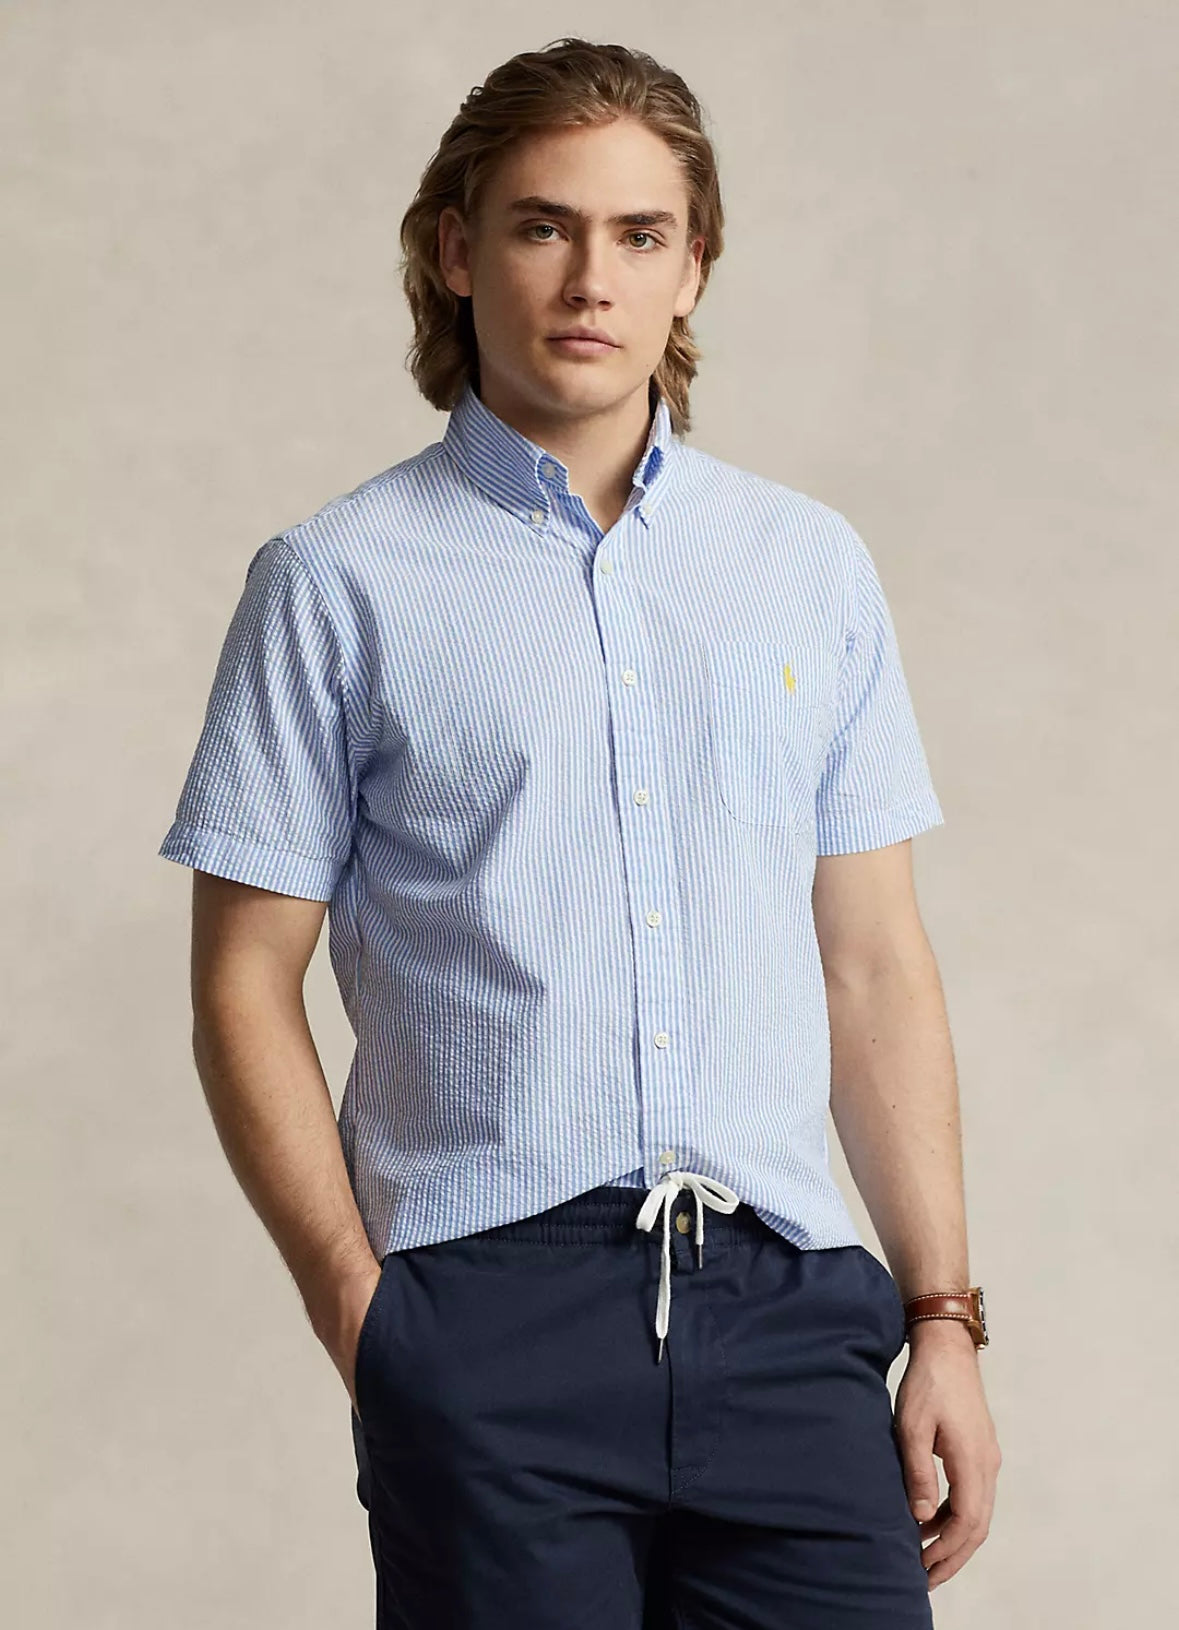 Polo Ralph Lauren Crepe Short shirt - Blue/White